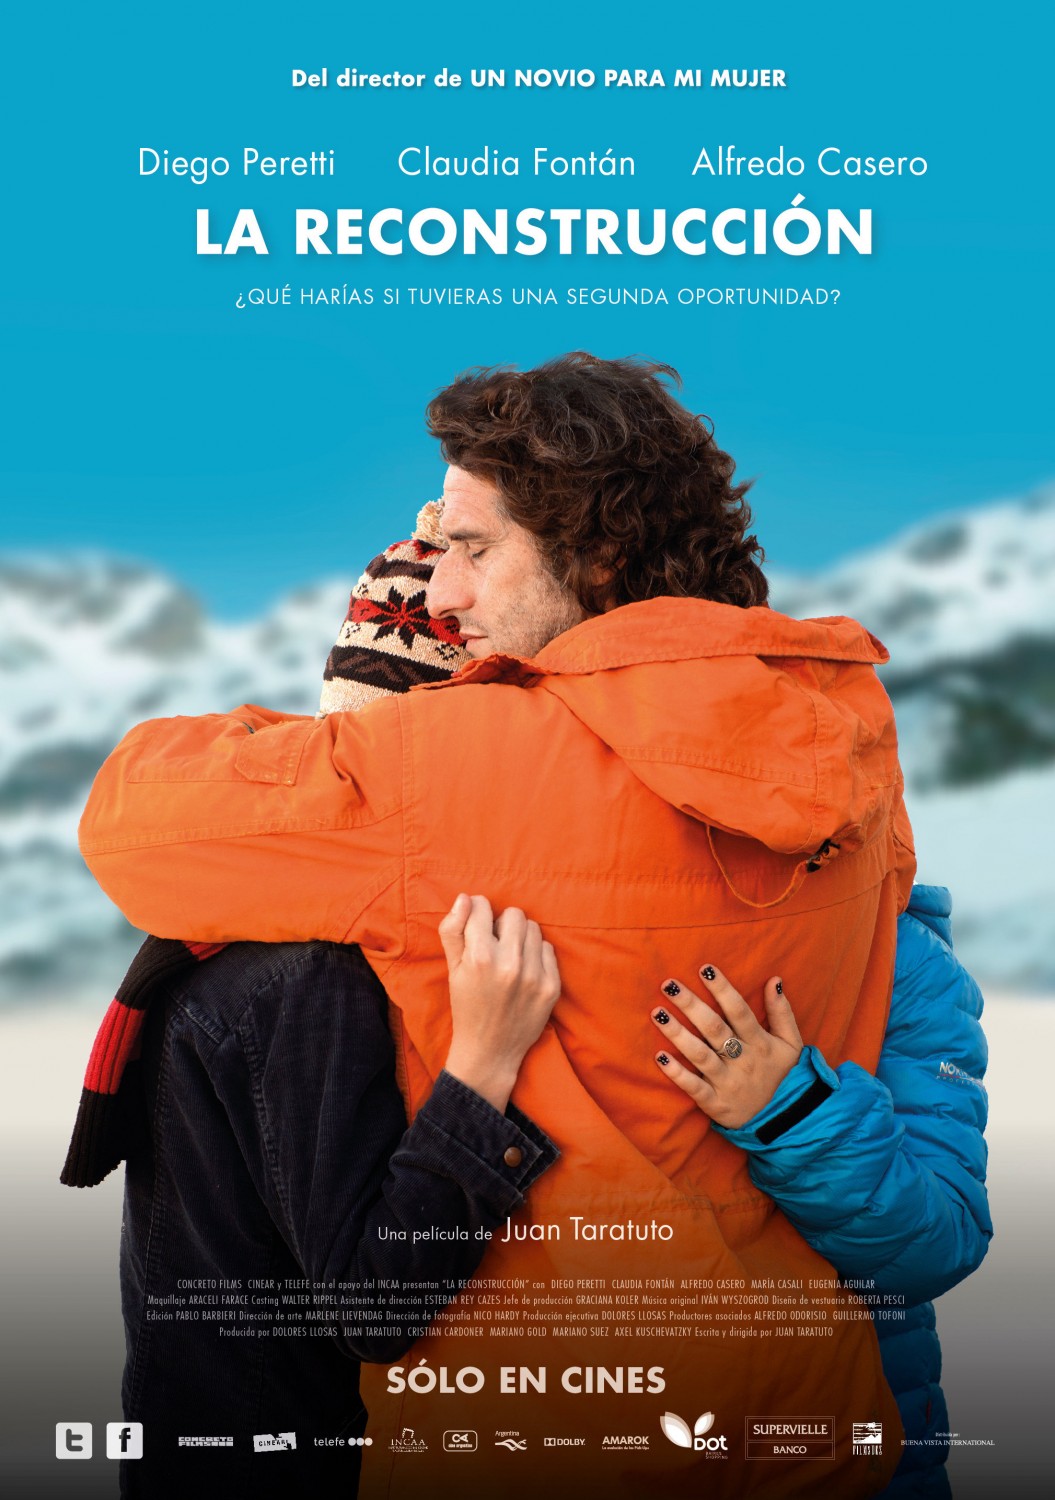 Extra Large Movie Poster Image for La reconstrucción 